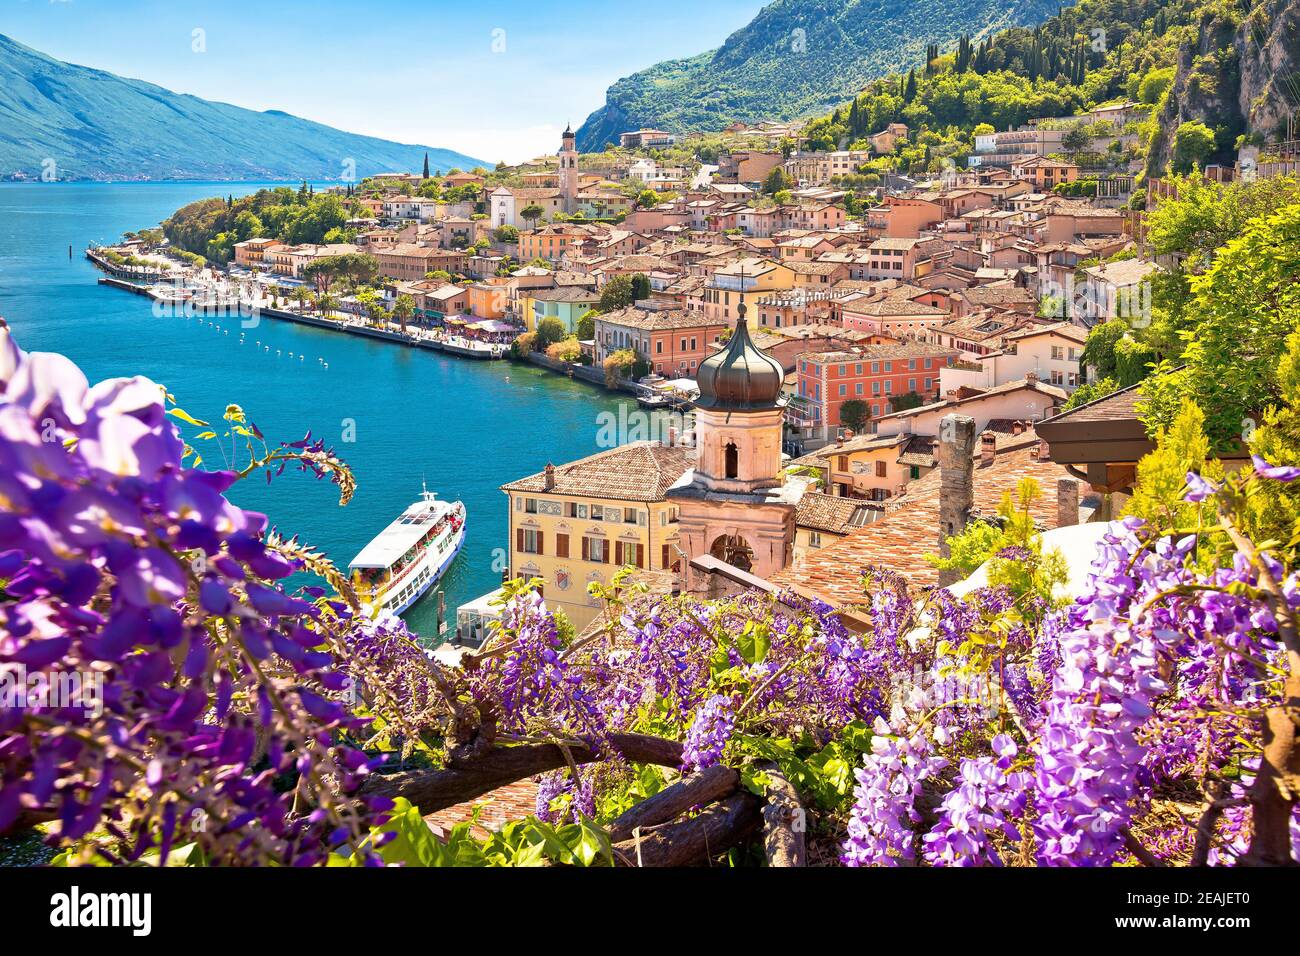 Town of Limone sul Garda on Garda lake view Stock Photo